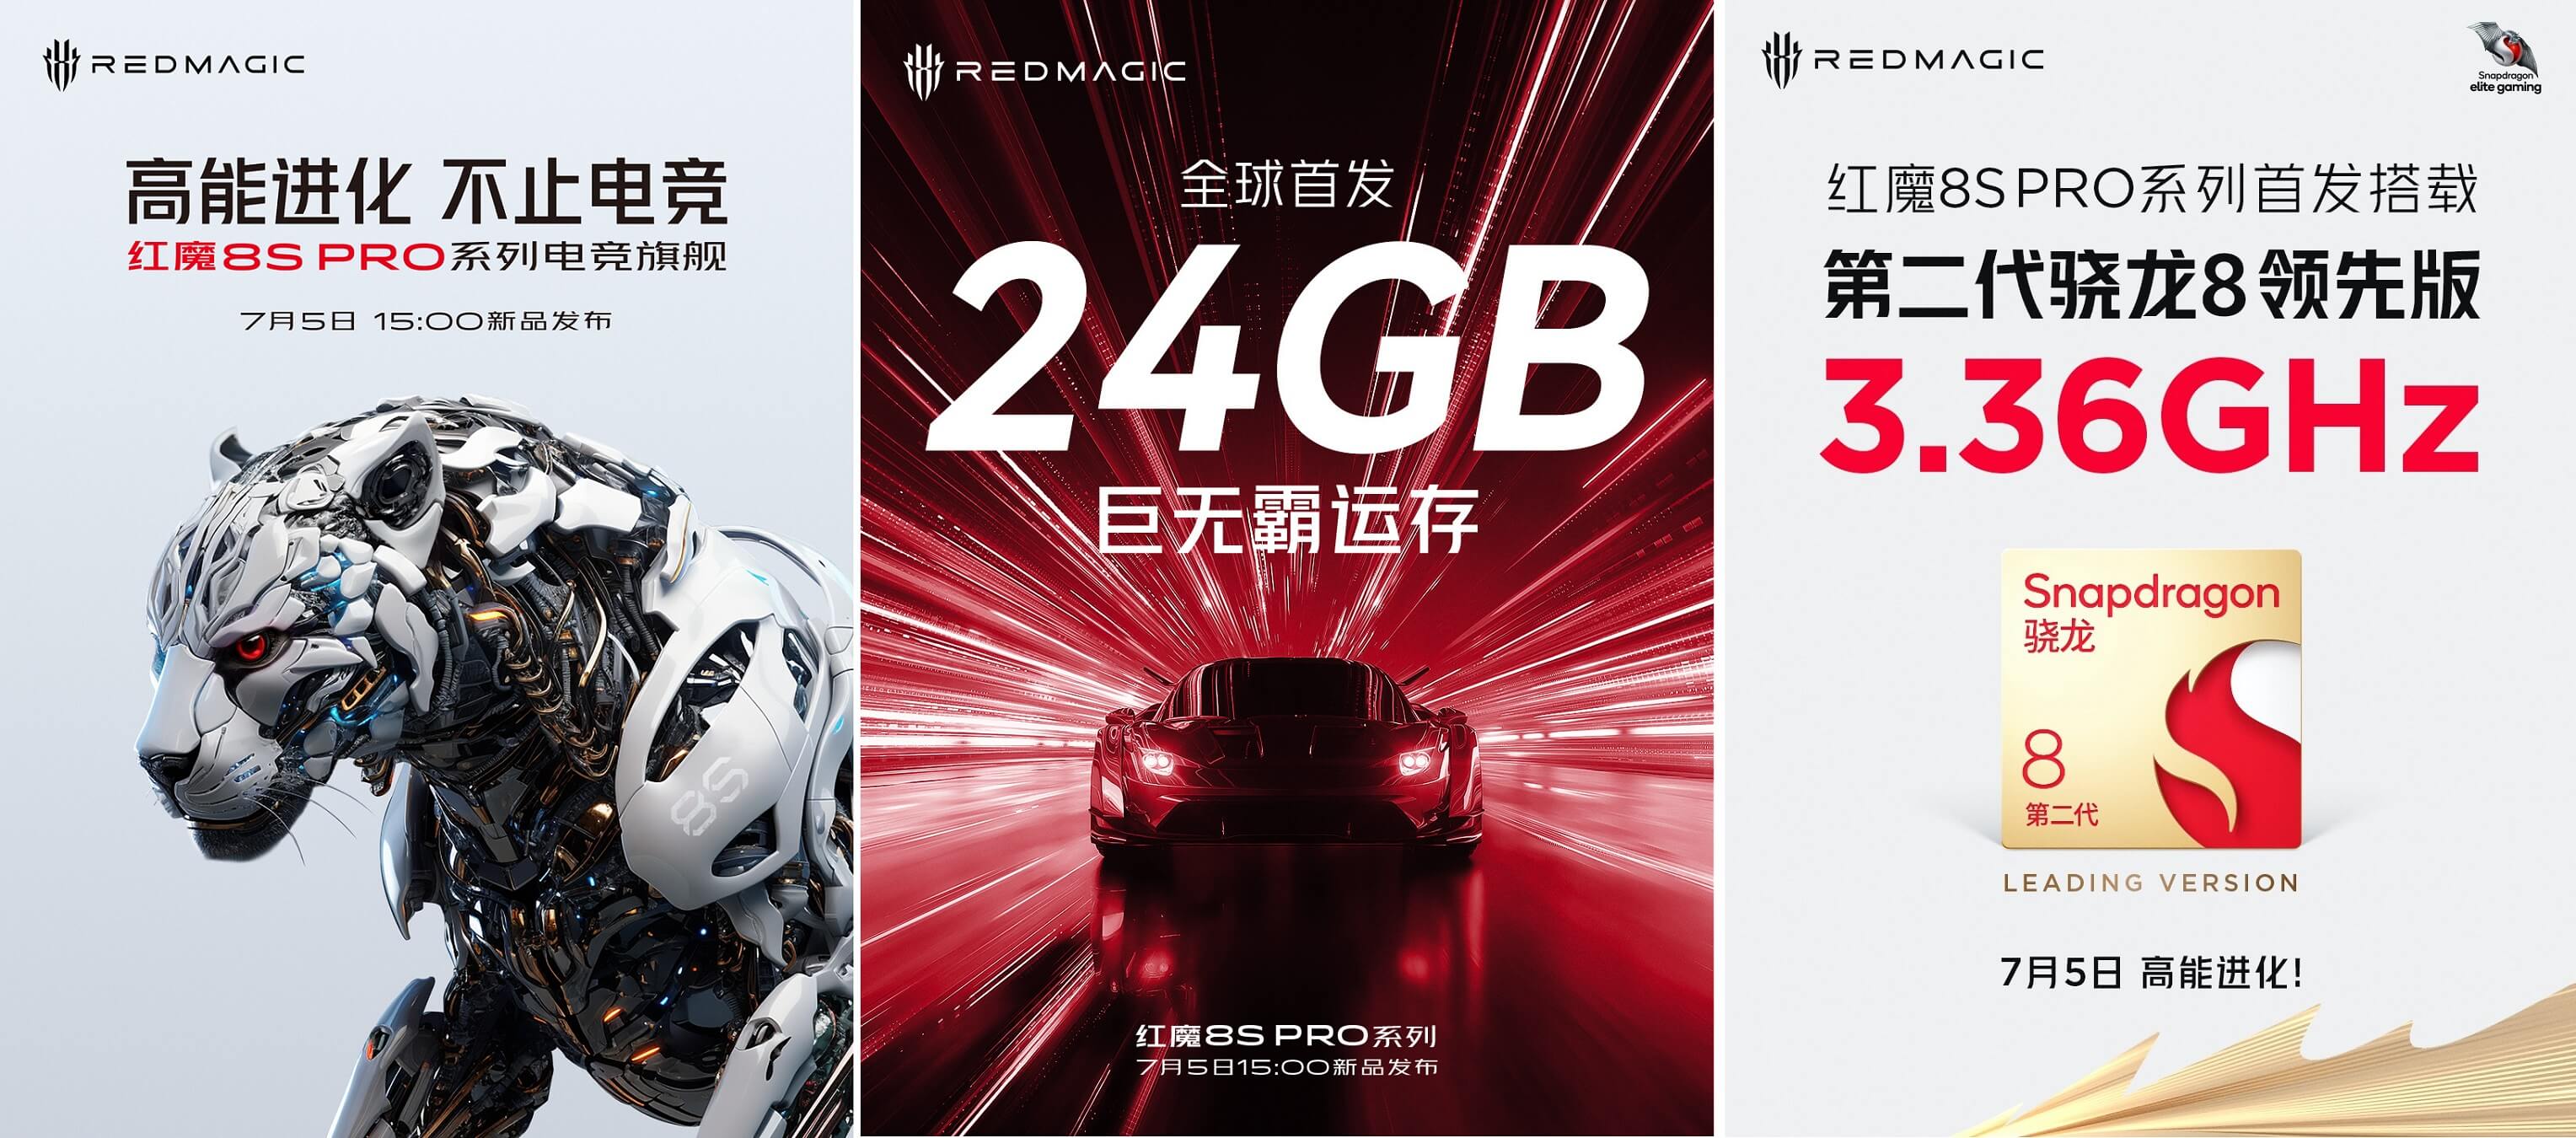 RedMagic 8S Pro features